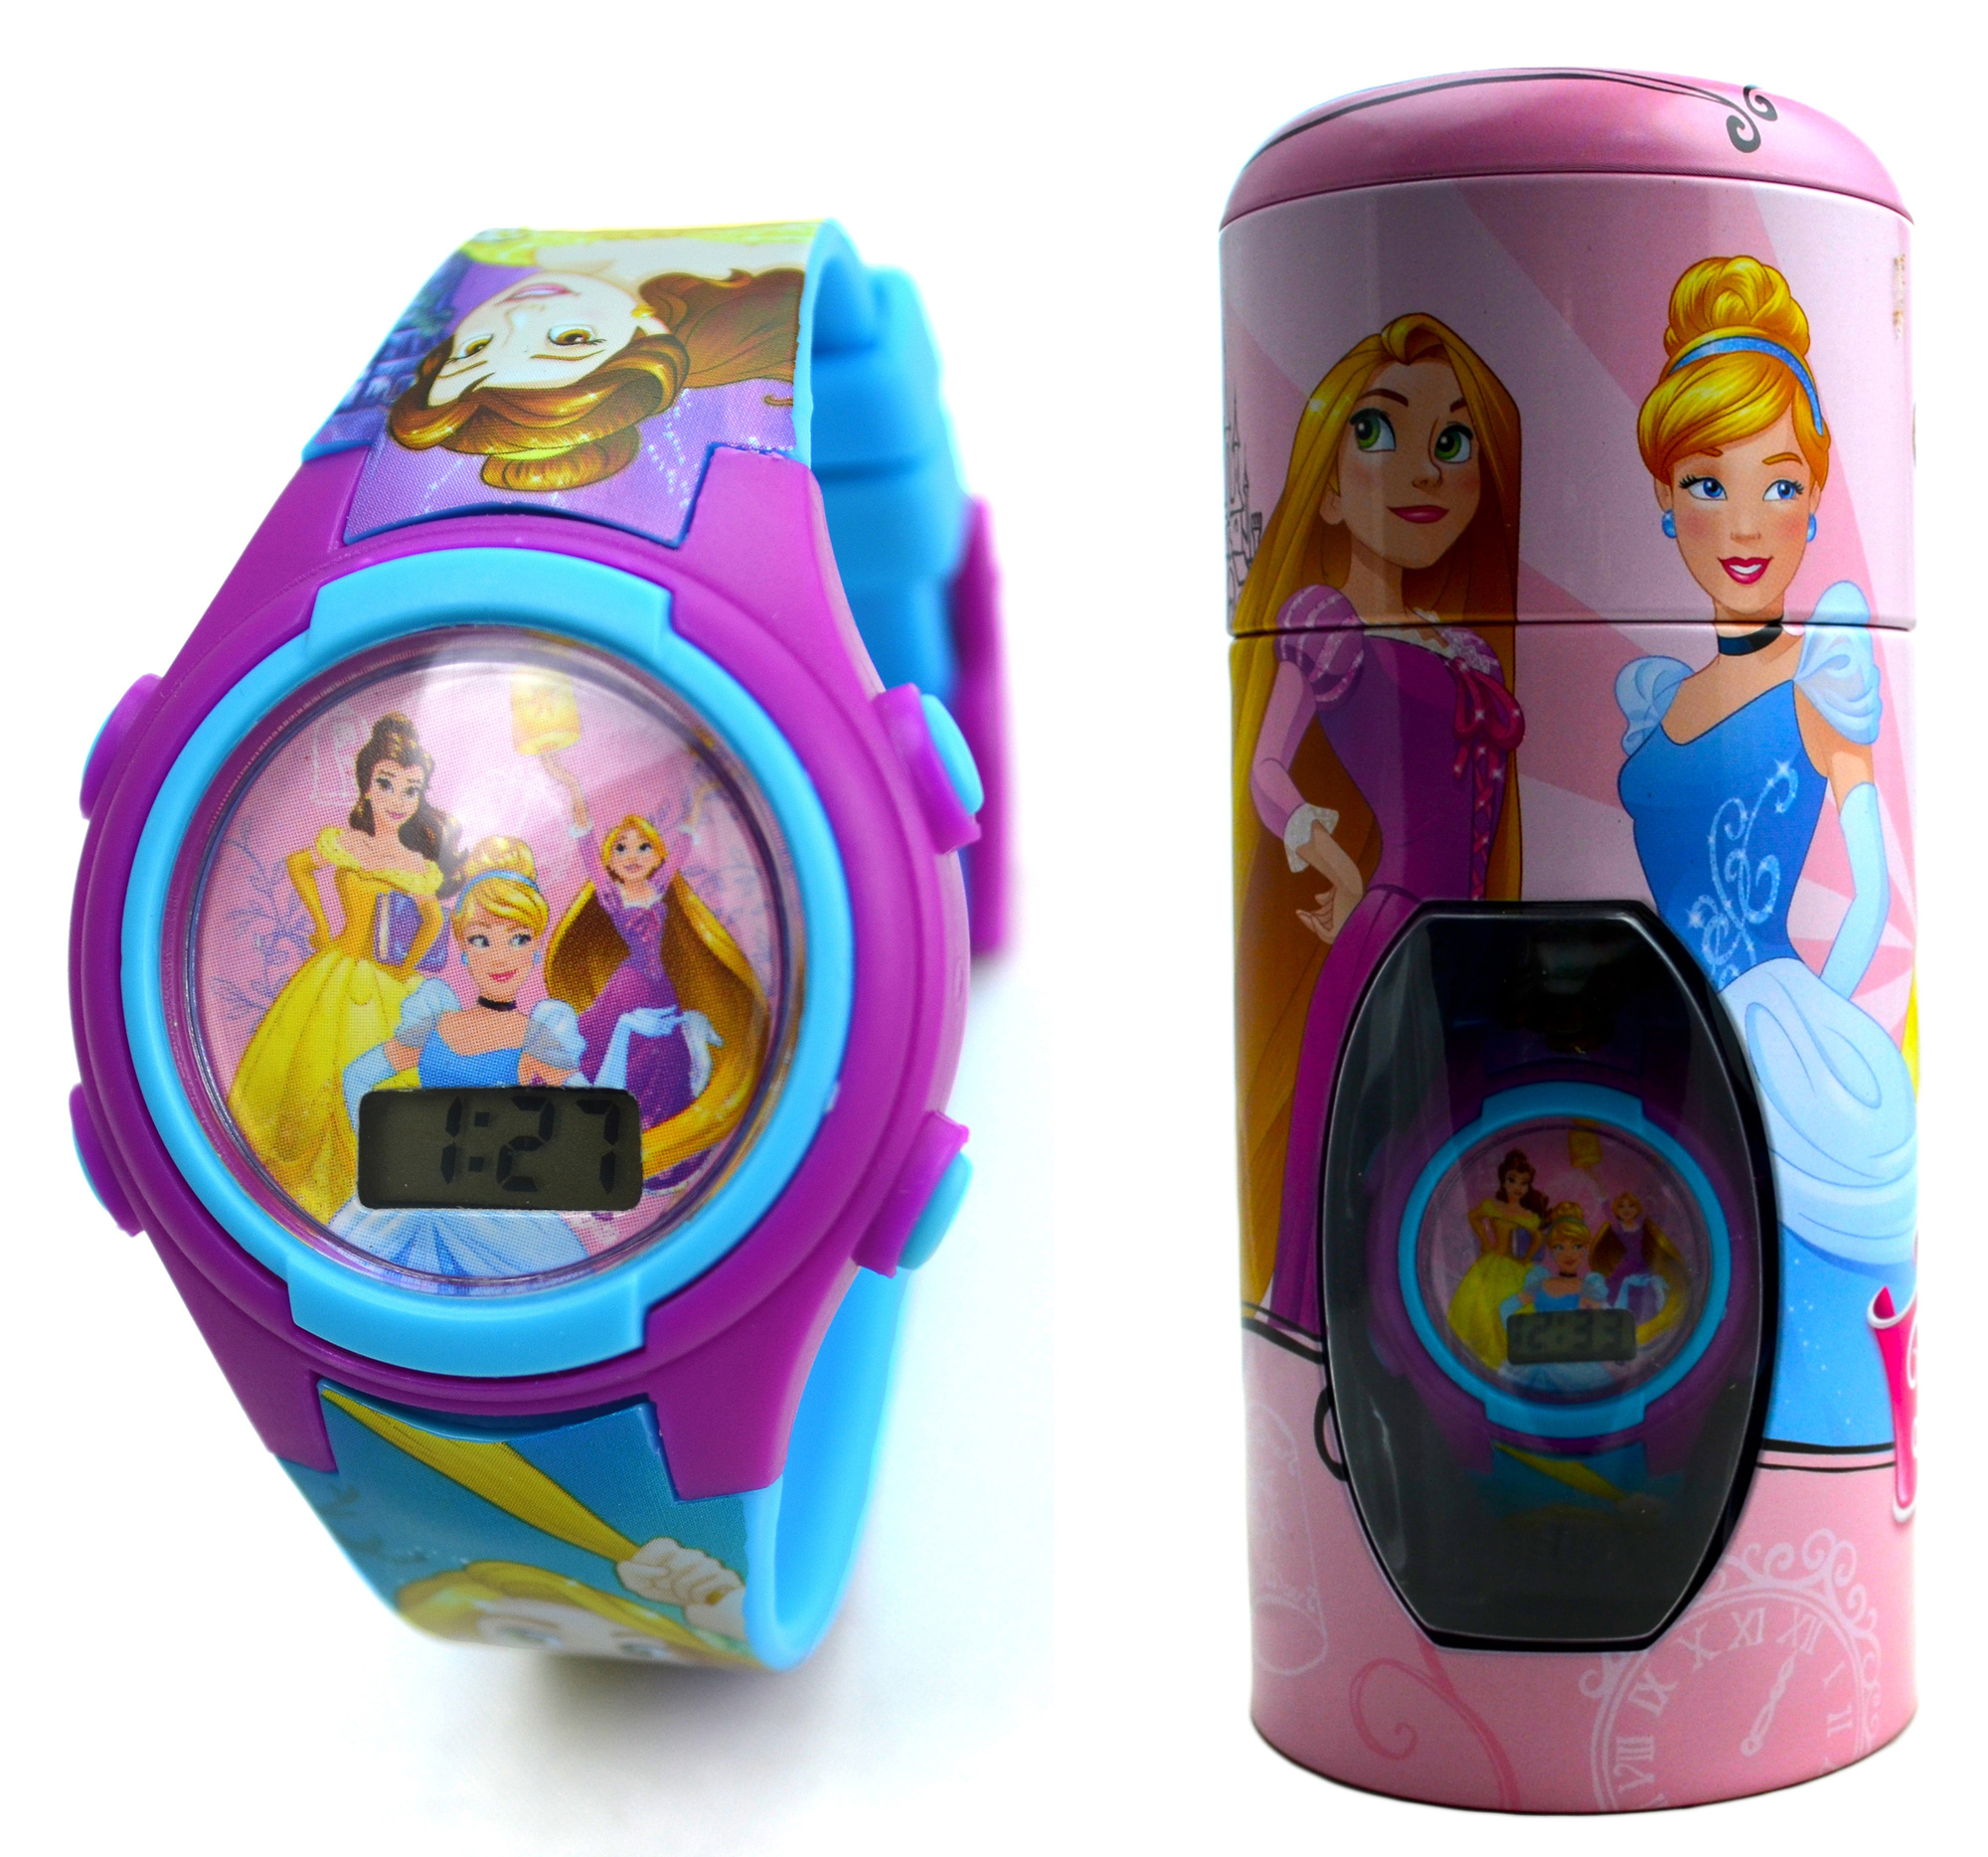 Disney Princess 'Belle & Friends' Girls Digital Metal Tin Gift Wrist Watch